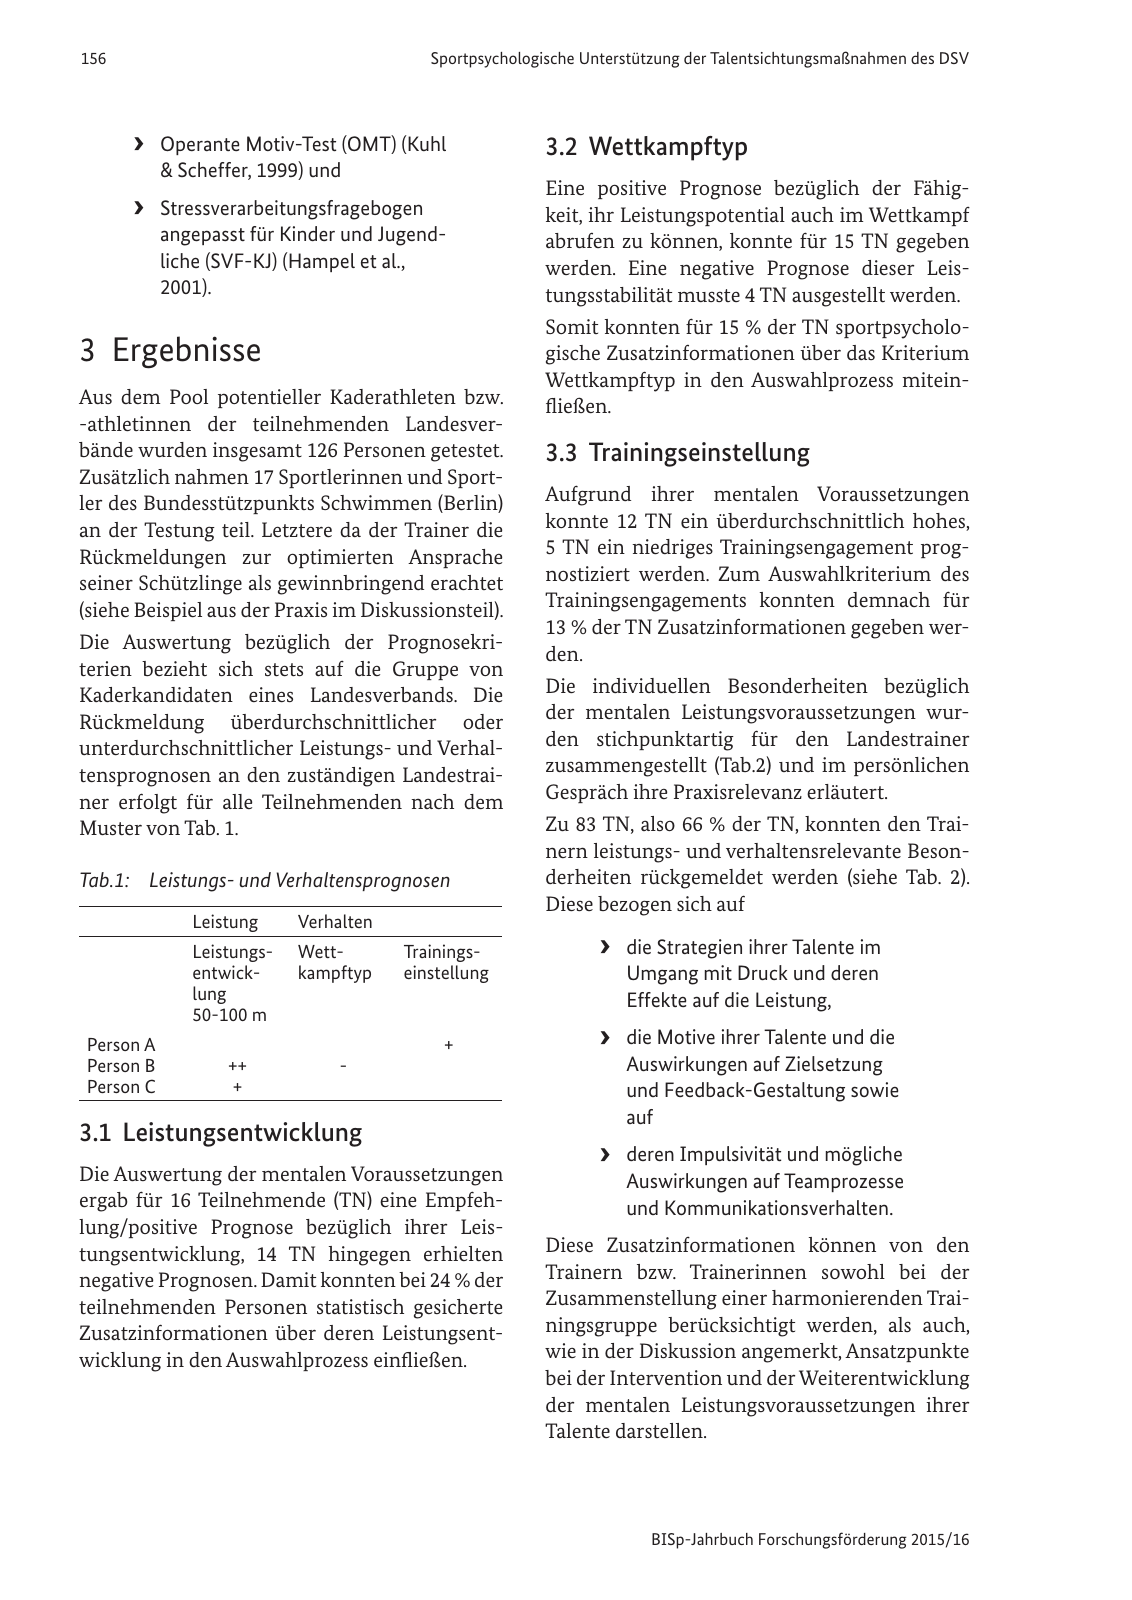 Vorschau BISp-Jahrbuch Forschungsförderung 2015/16 Seite 158